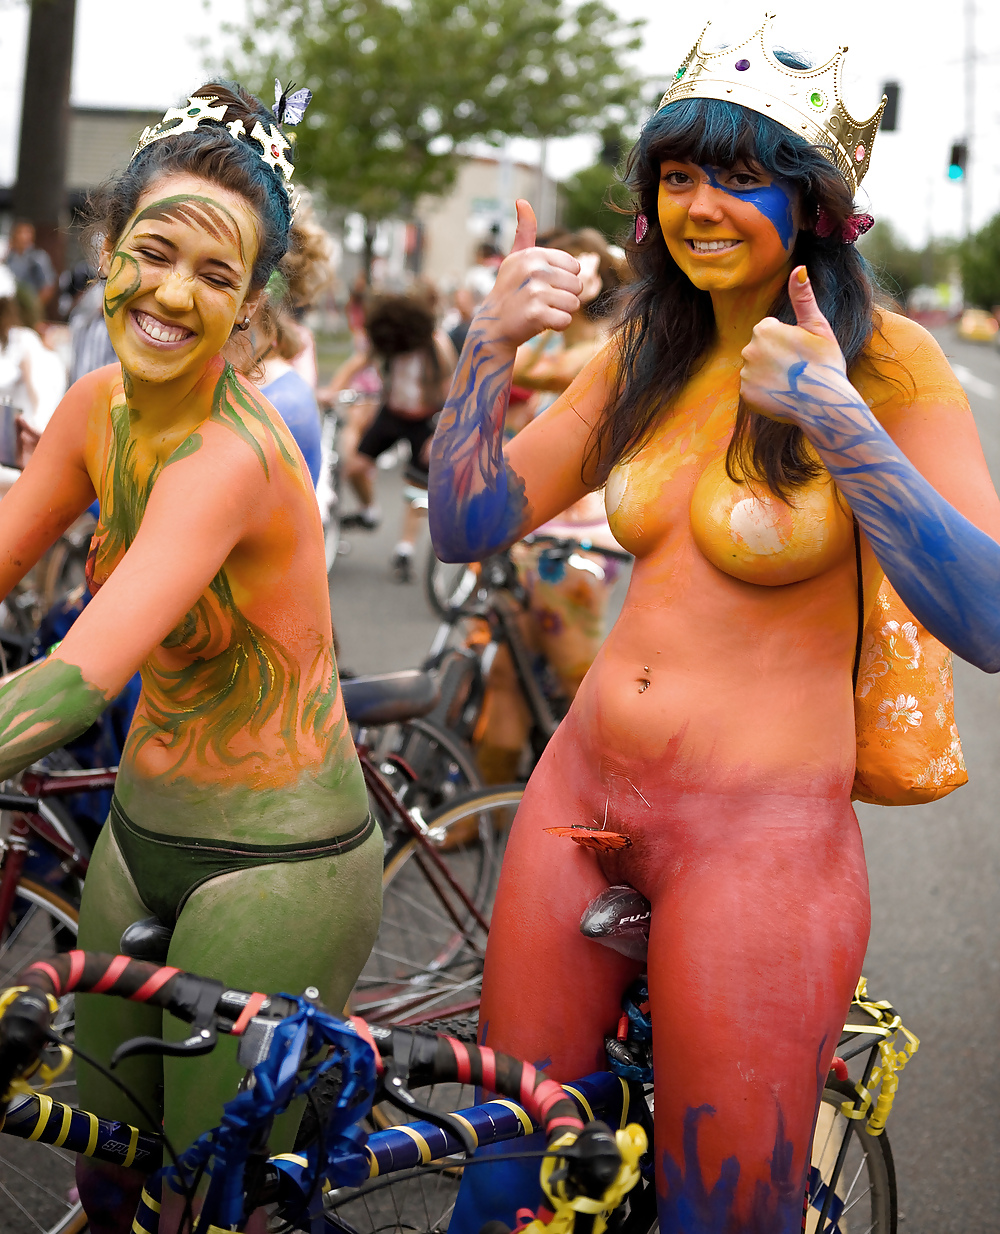 Naked girls on bikes #10798028